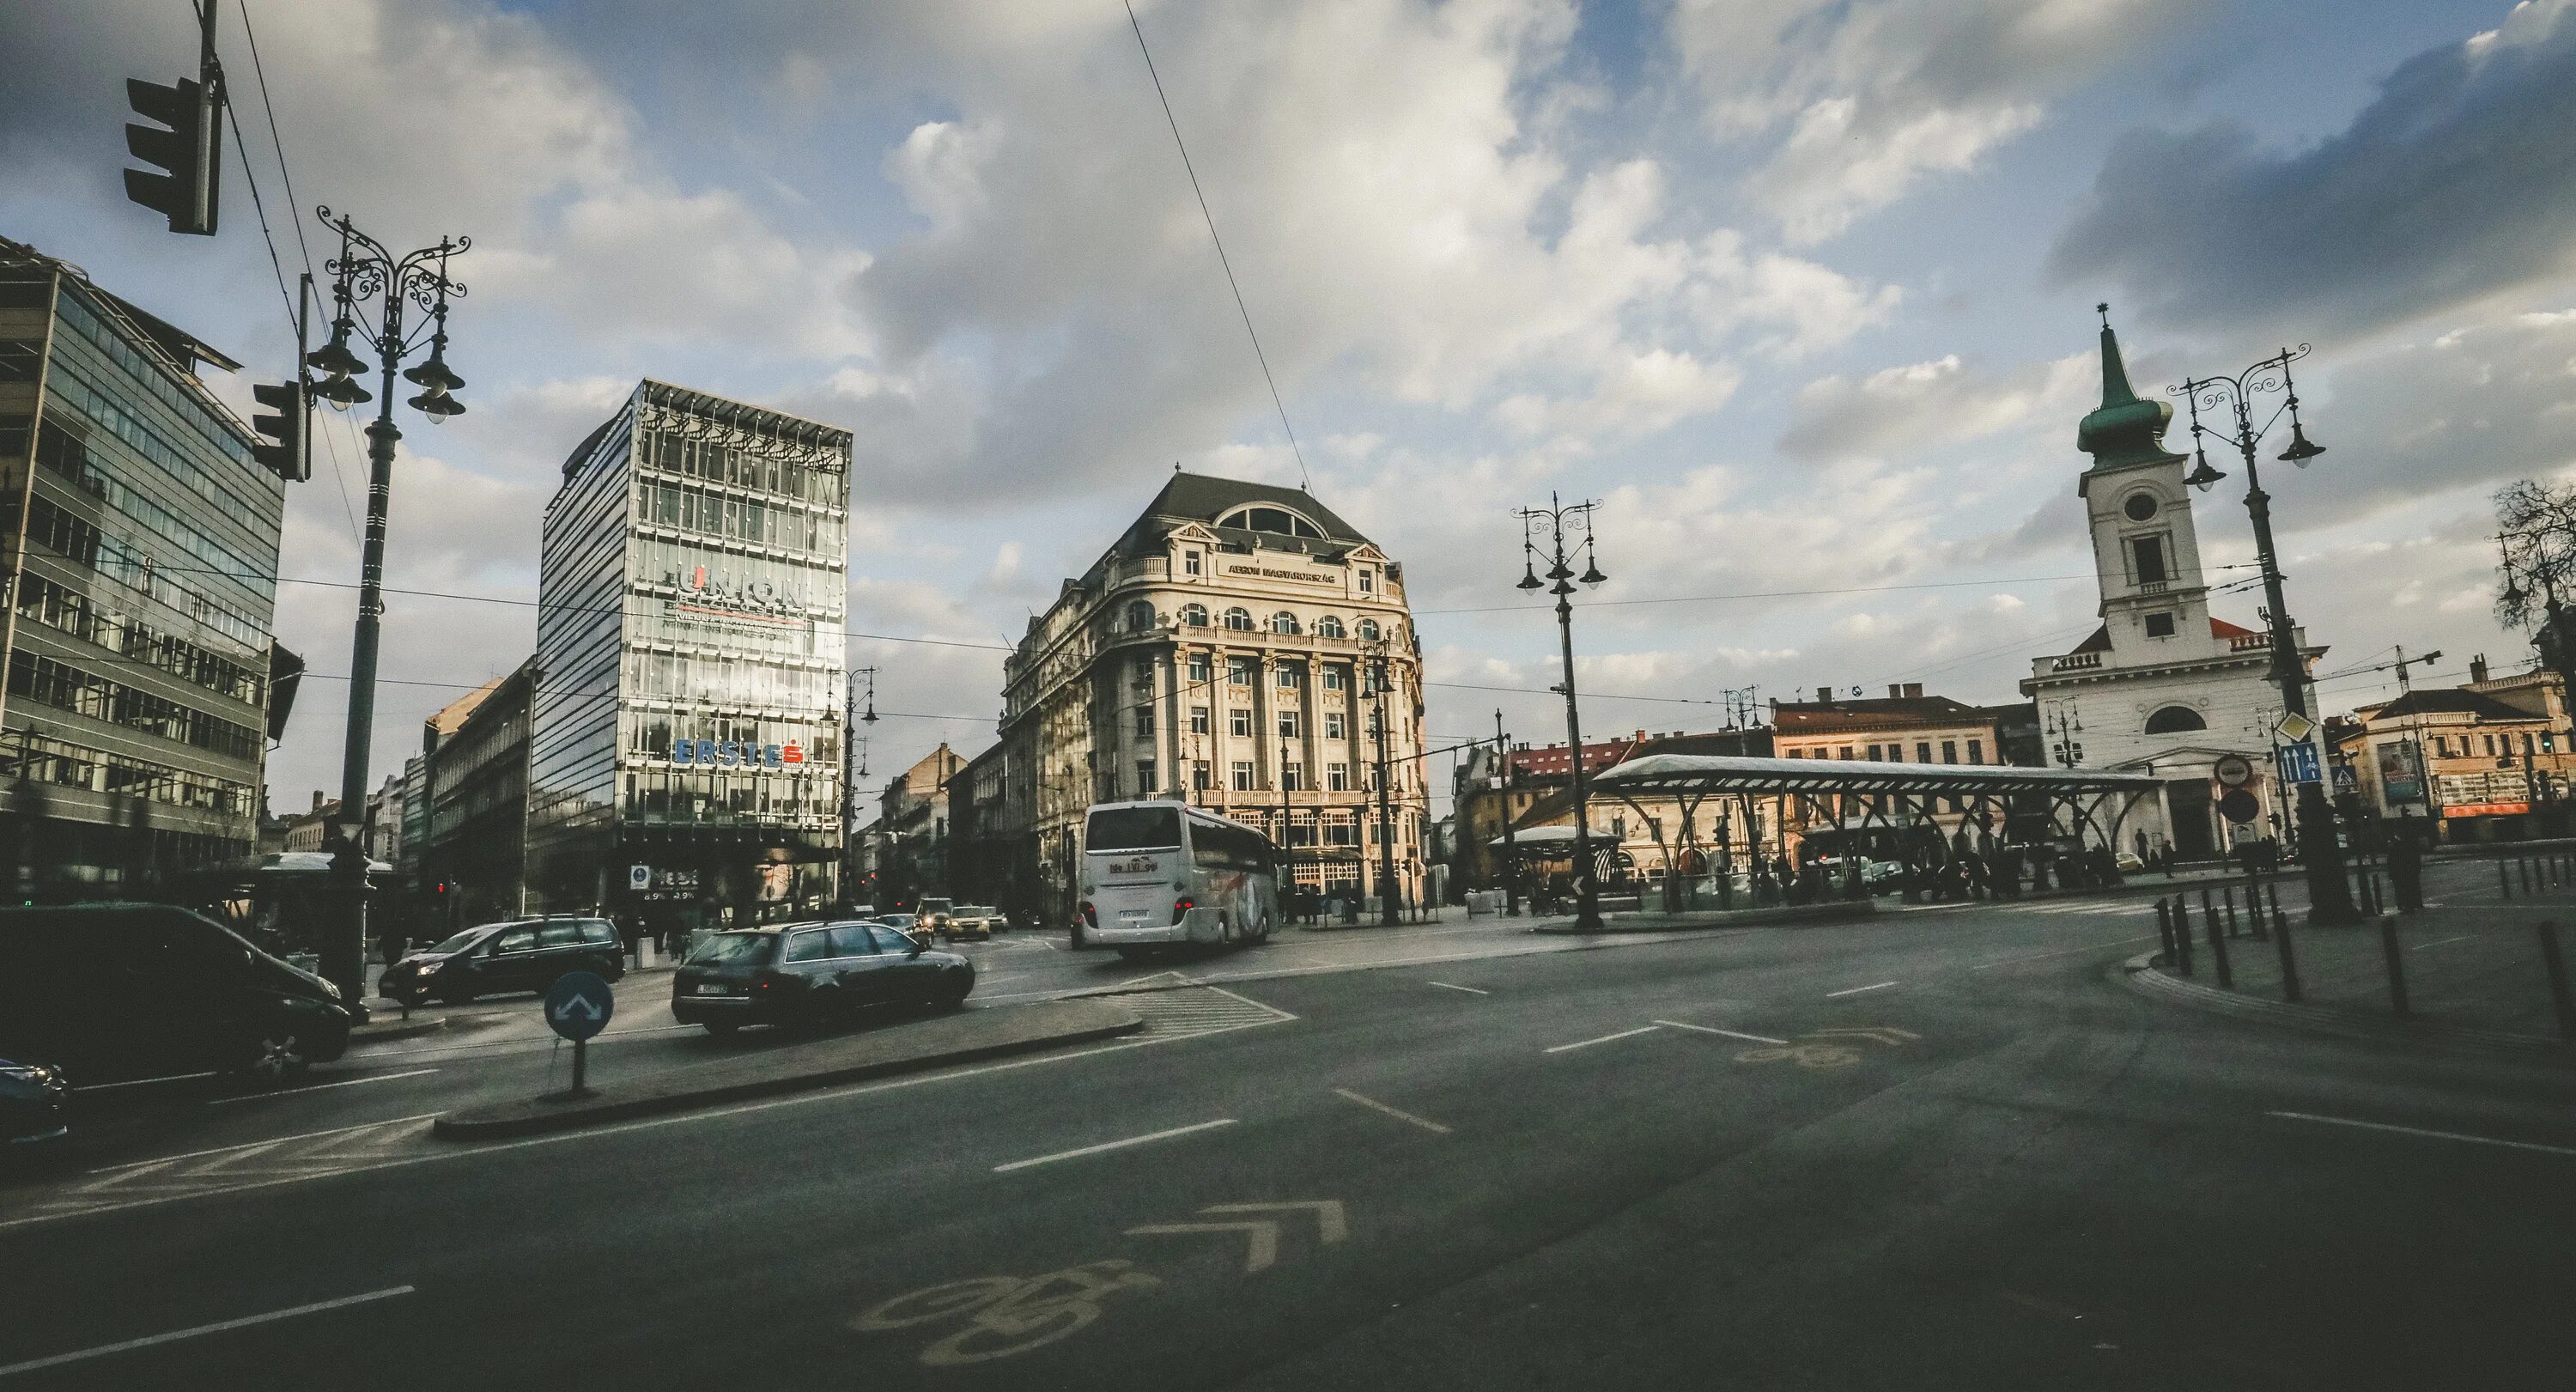 Город ход хорошем. Площадь Венгрии. Площадь Kalvin ter в Будапеште фото. Венгрия фото улиц на площади. Венгерские картинки.